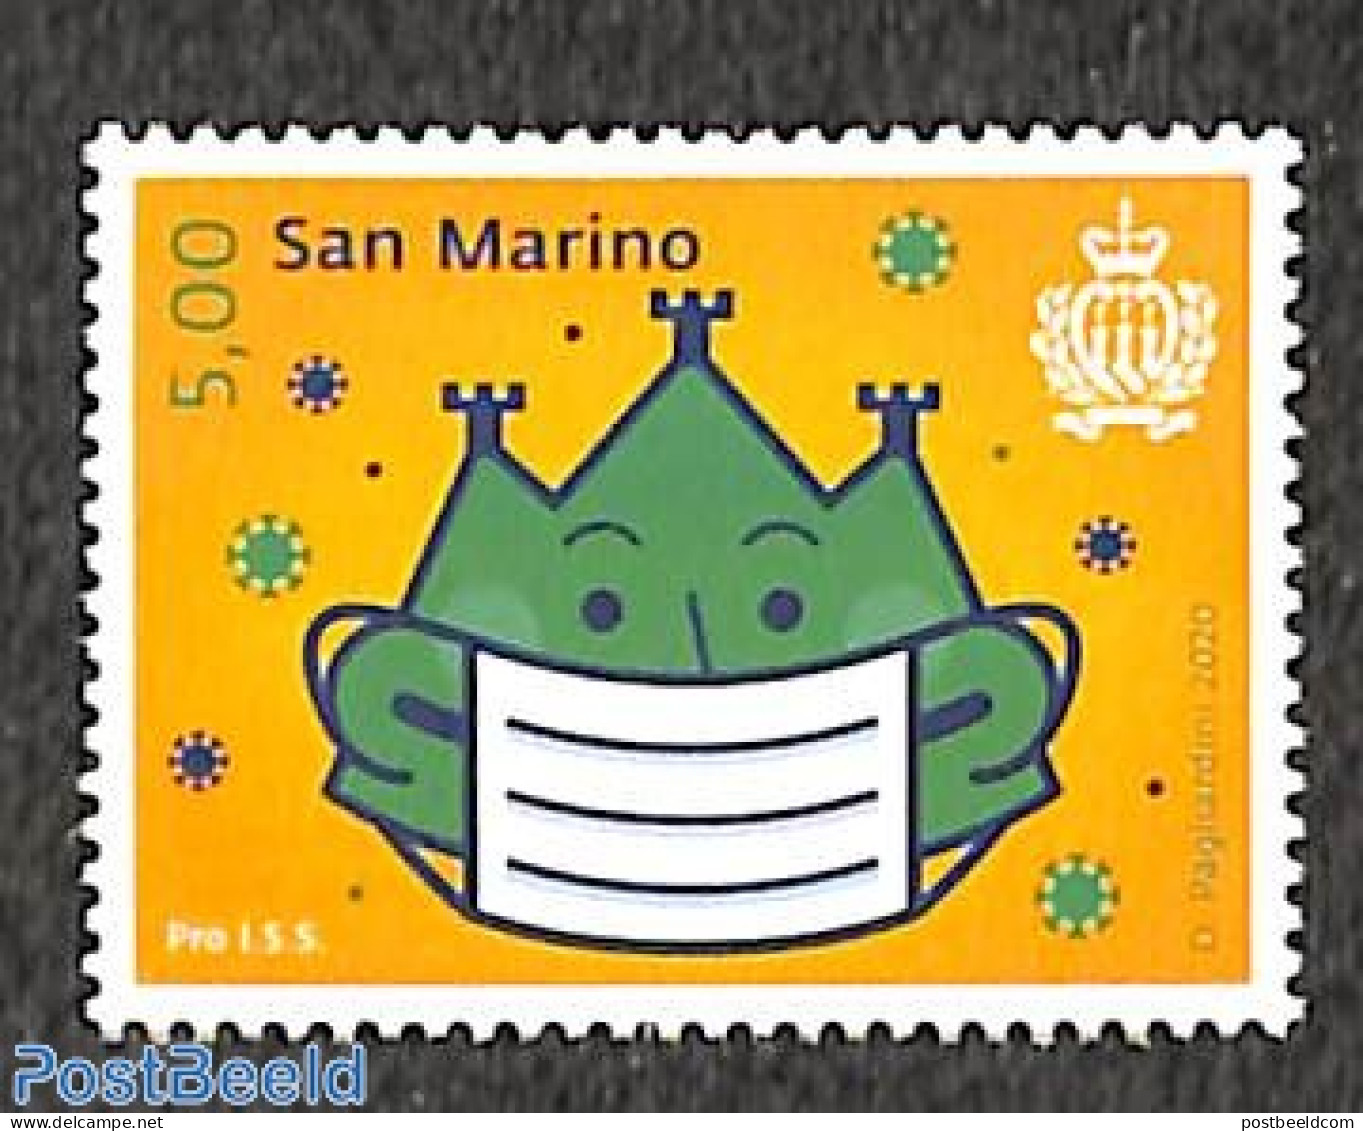 San Marino 2021 Pro ISS 1v, Mint NH, Health - Health - Corona/Covid19 - Ongebruikt